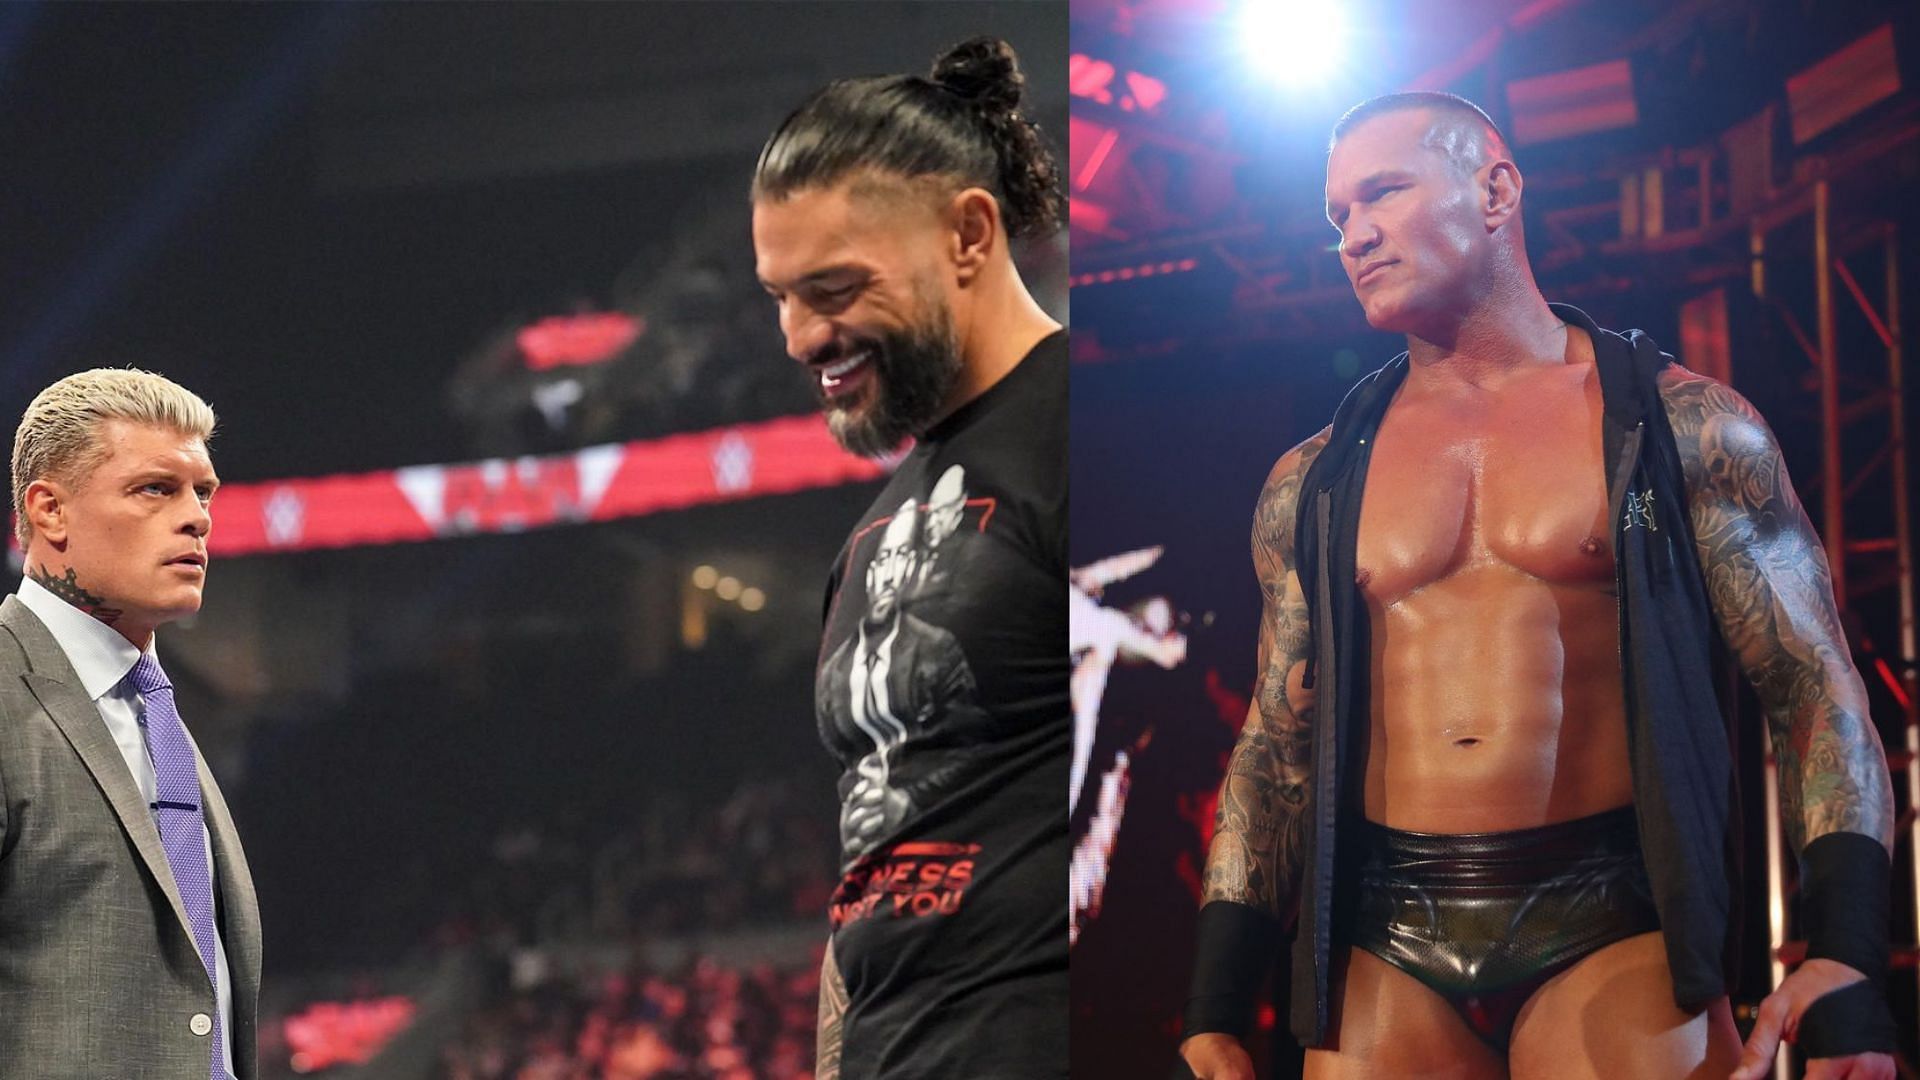 Will Randy Orton interfere in the WrestleMania main event?